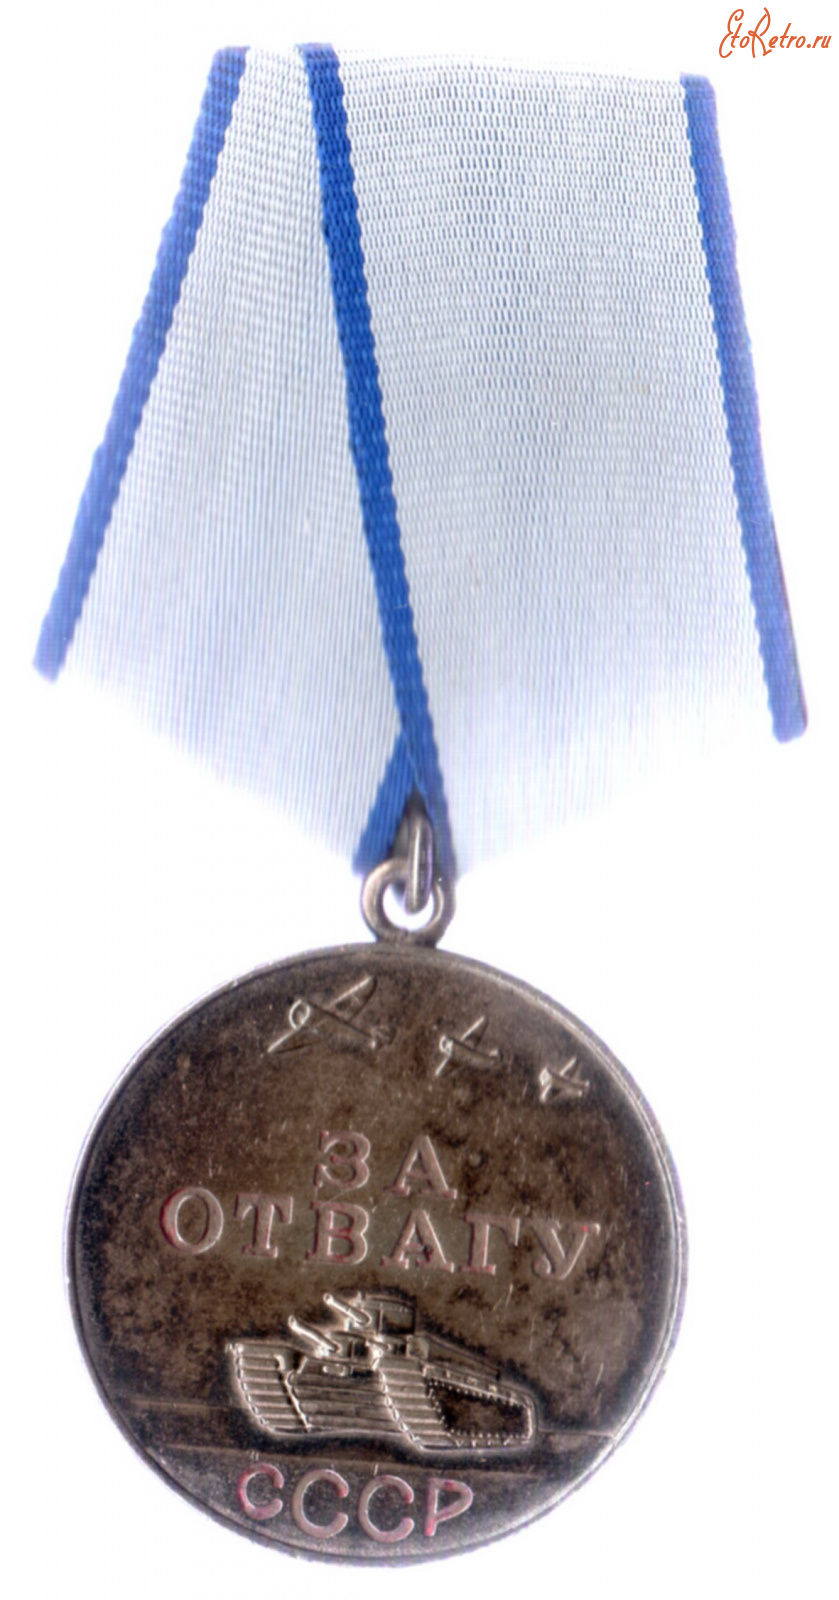 Медали, ордена, значки - Медаль За отвагу №1181077